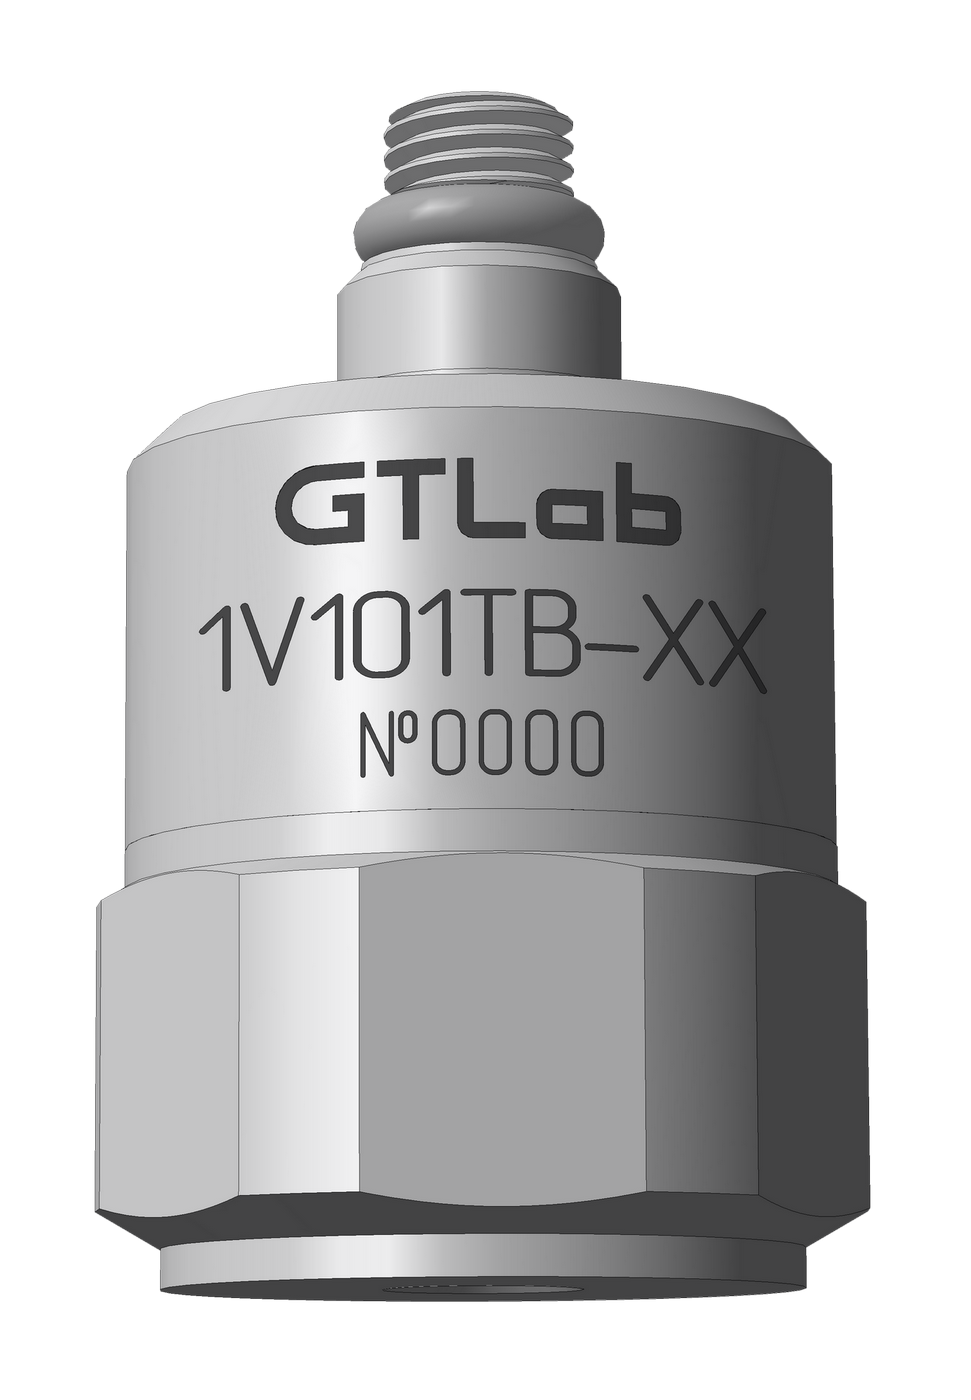 GTLAB 1V101TB-500 Стабилизаторы напряжения